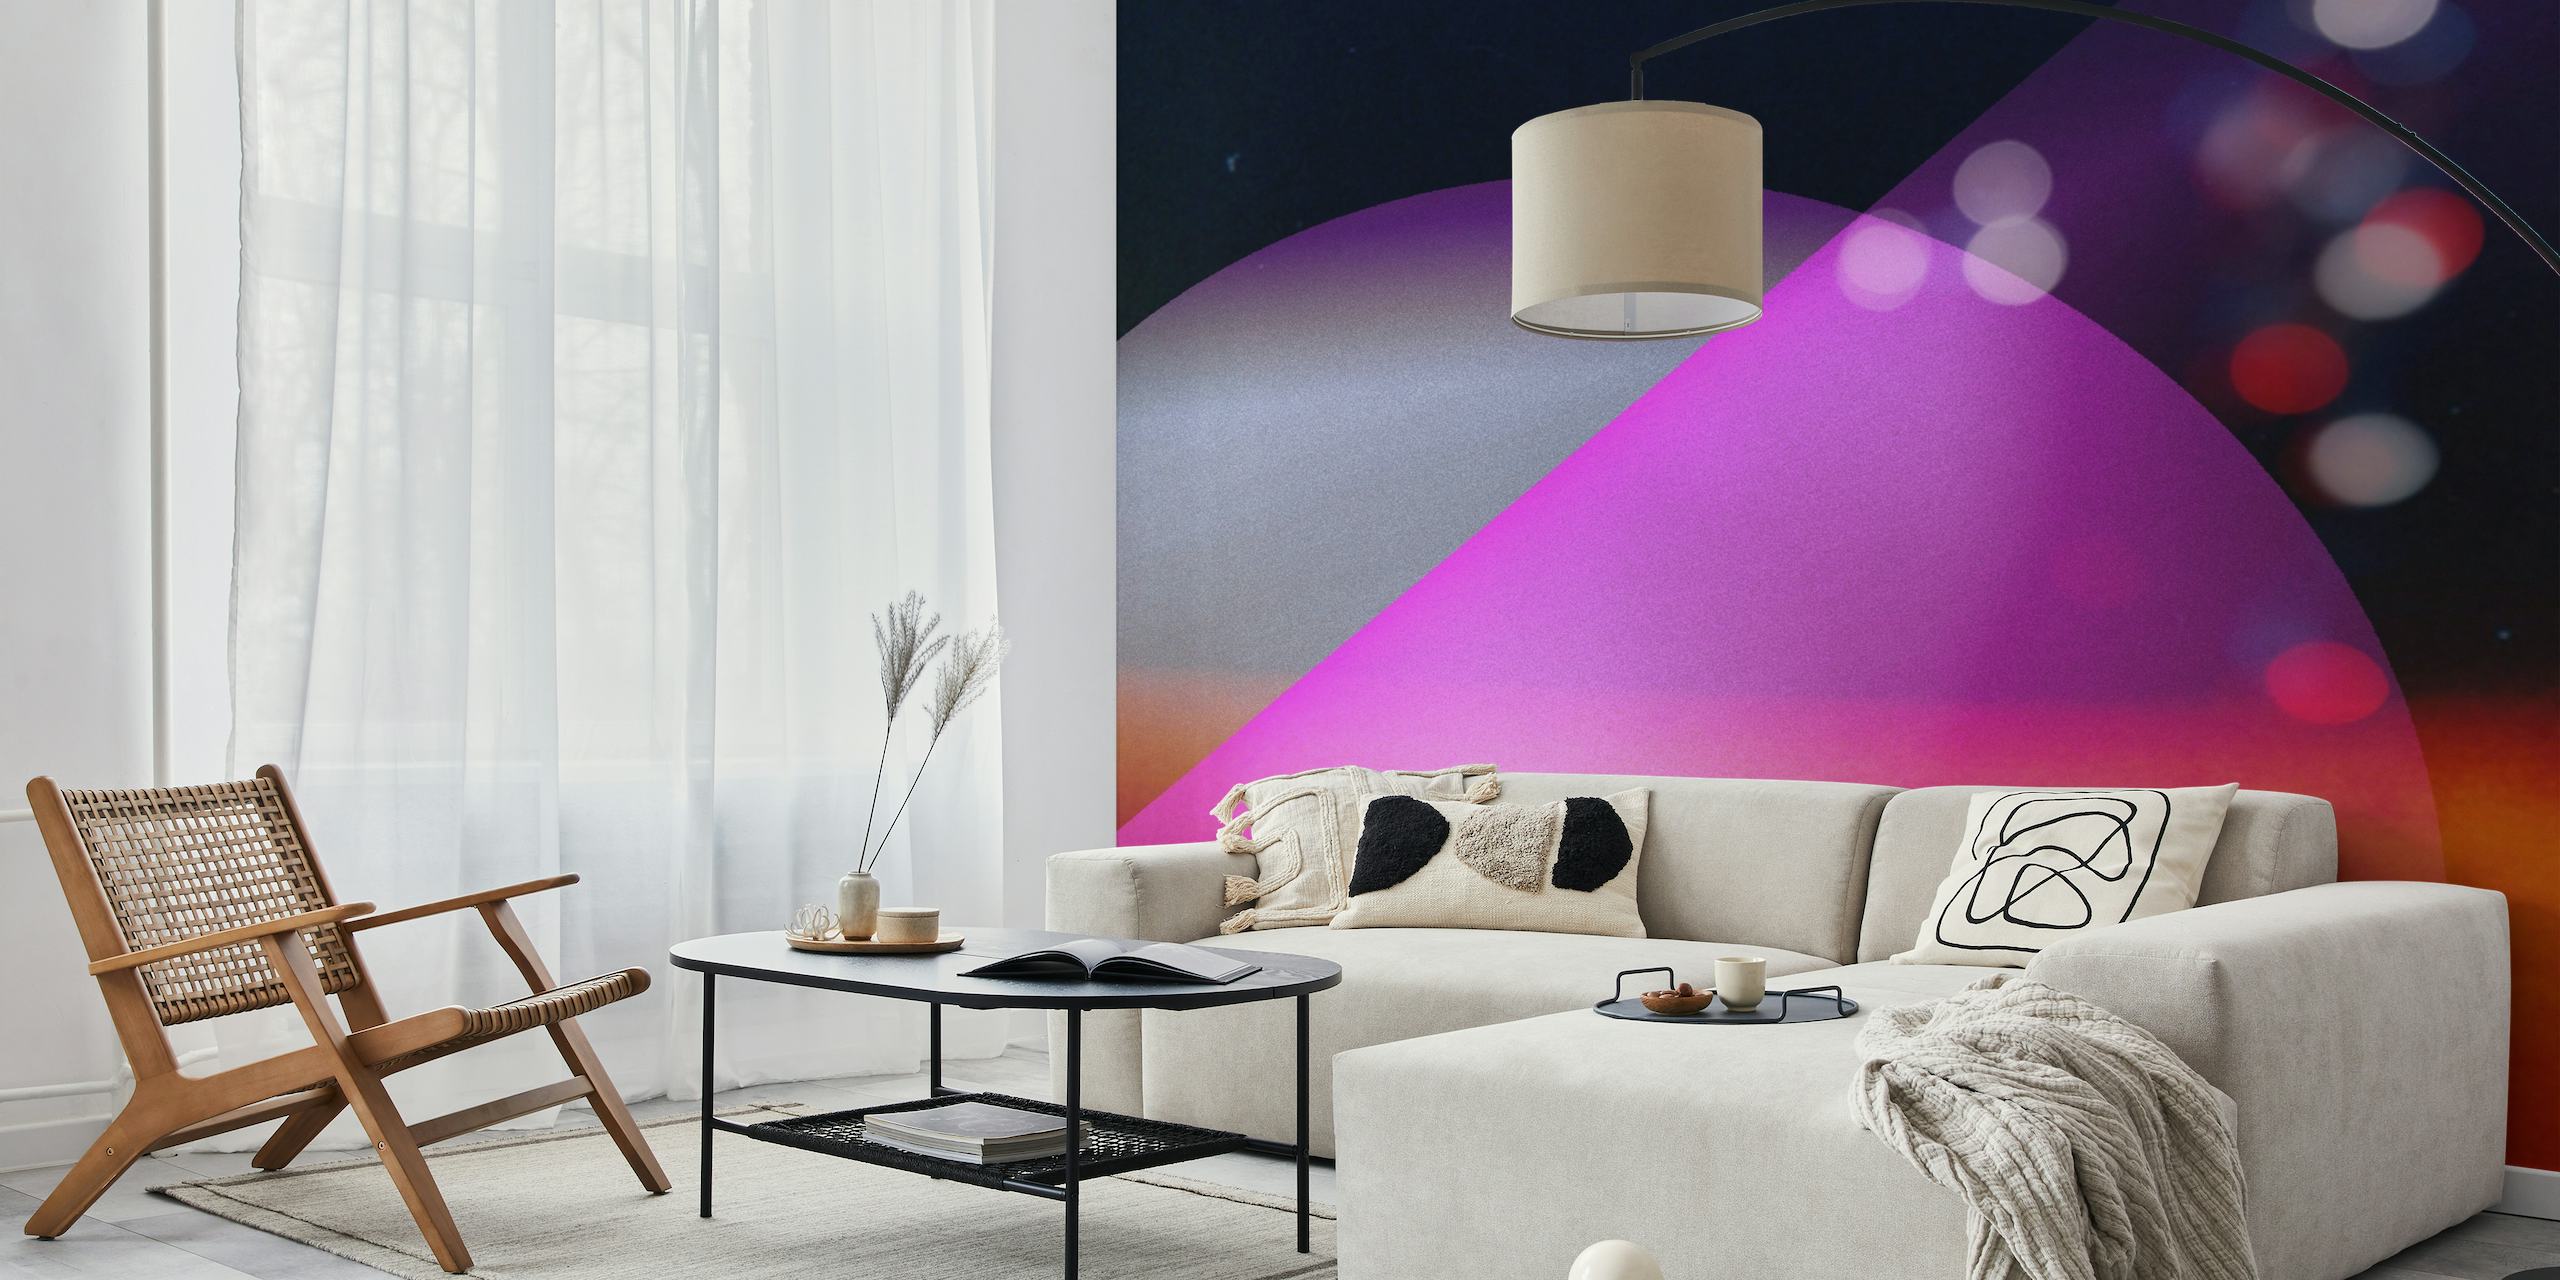 Mural cósmico abstracto con vibrantes violetas, azules y rosas que se asemejan a un universo distante